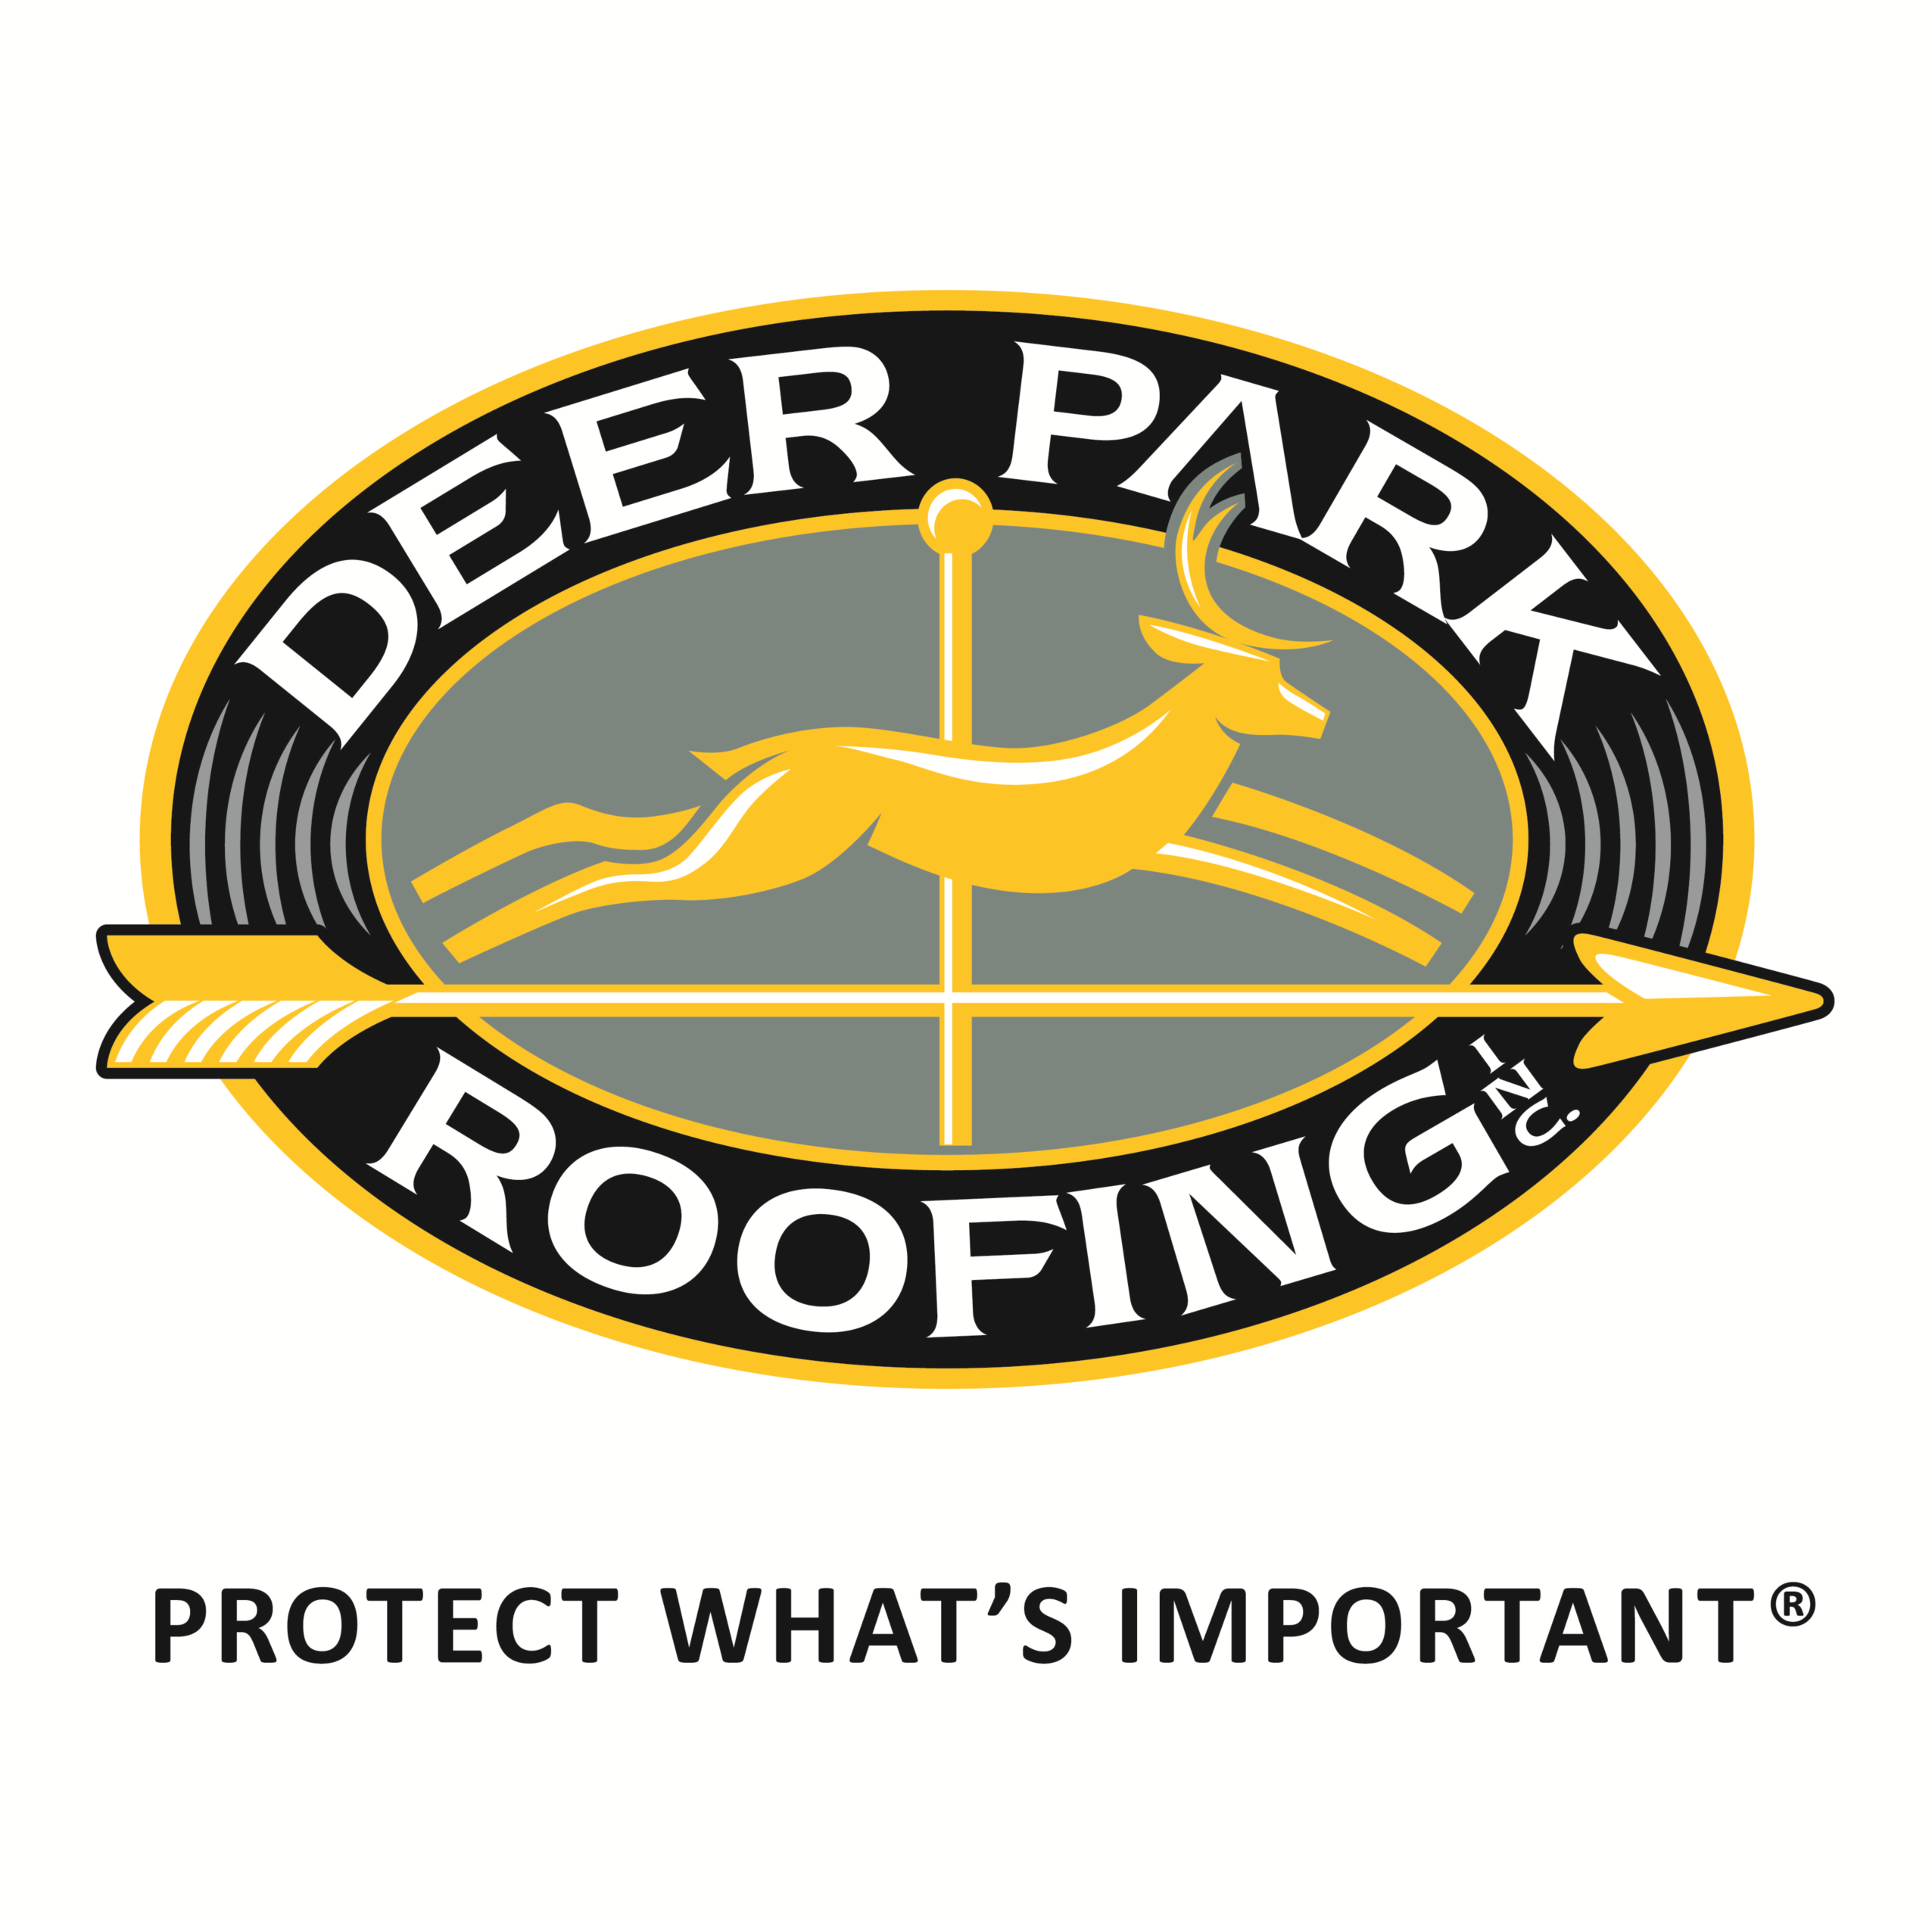 Deer Park Roofing logo